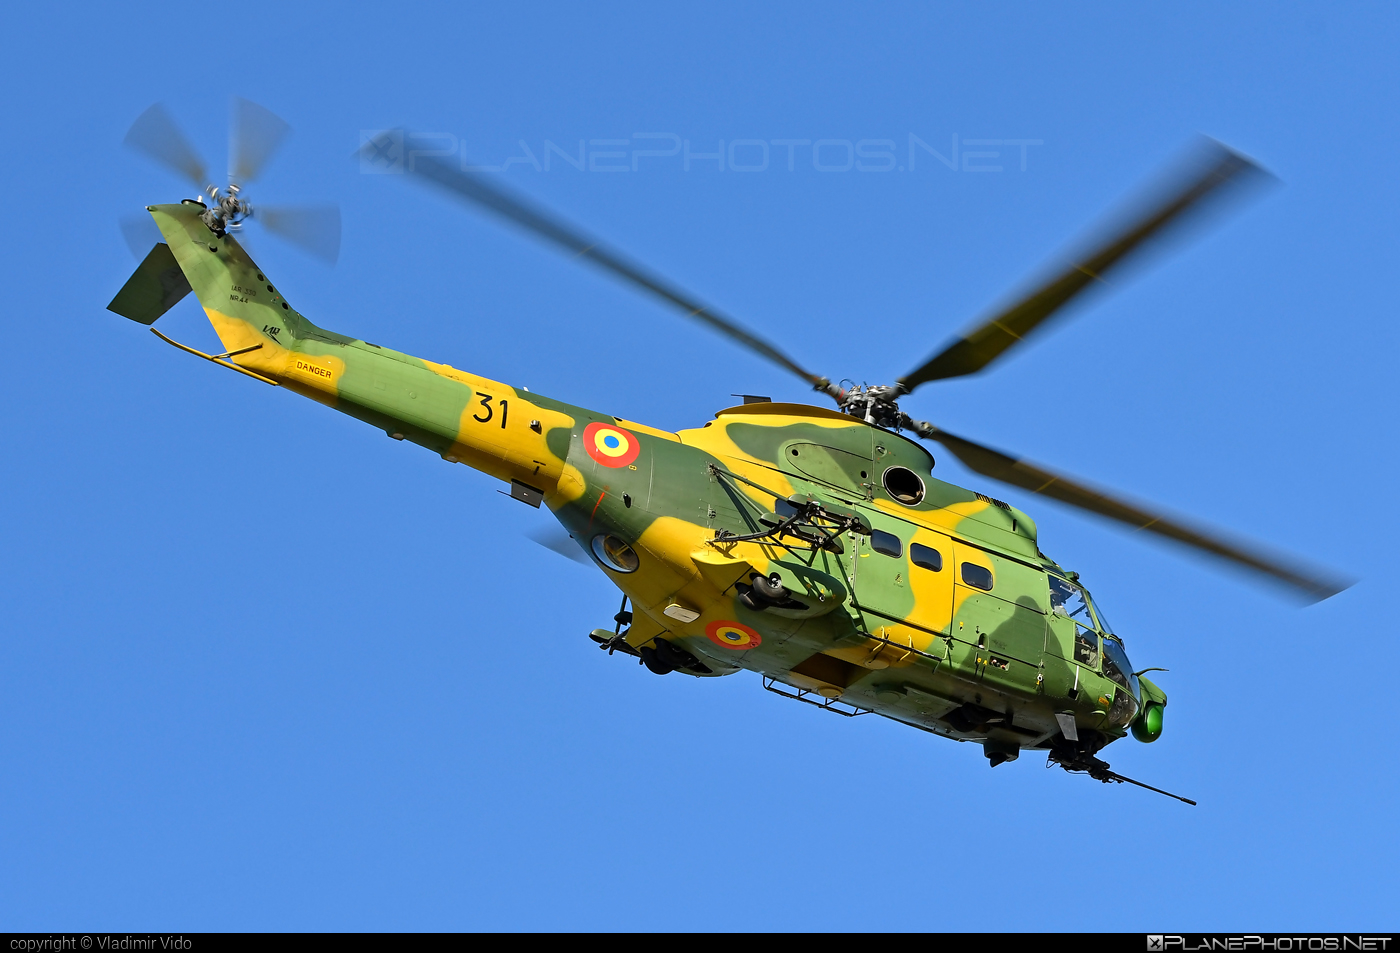 IAR 330L Puma SOCAT - 31 operated by Forţele Aeriene Române (Romanian Air Force) #forteleaerieneromane #iar #iar330 #iar330l #iar330lpuma #iar330lpumasocat #iar330puma #industriaAeronauticaRomana #romanianairforce